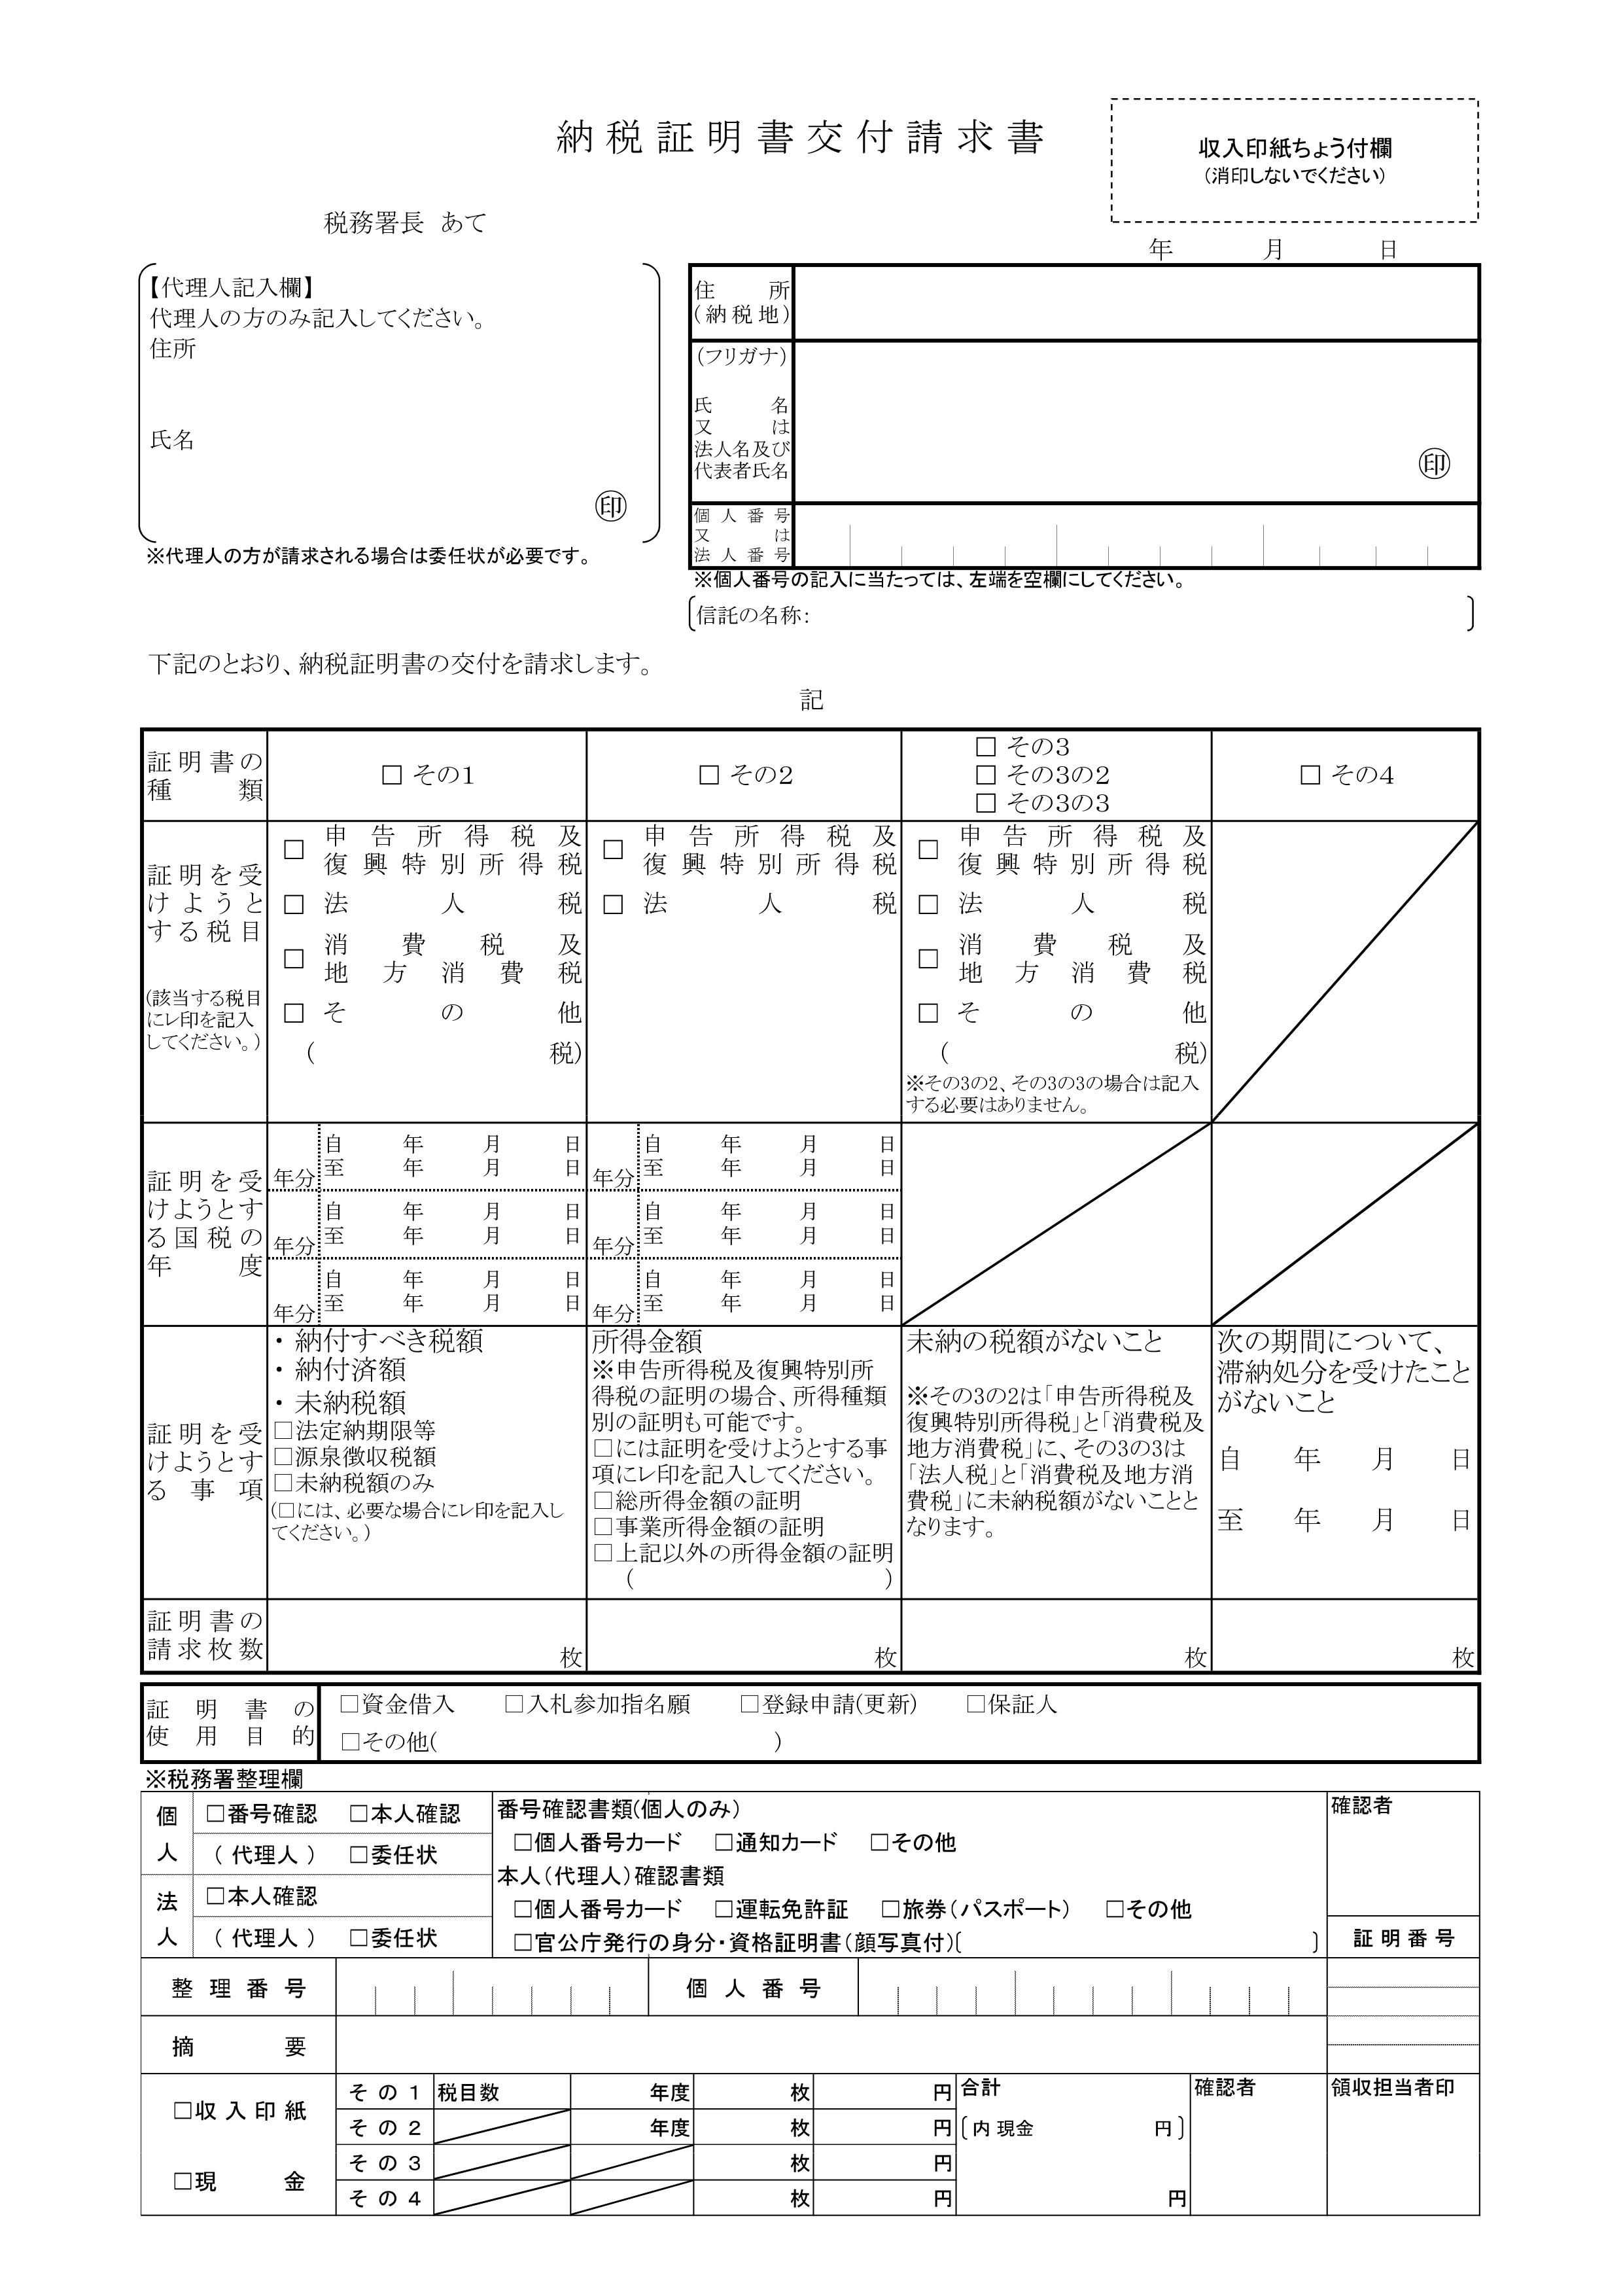 納税証明書の種類について 京都の齊藤究税理士社会保険労務士事務所